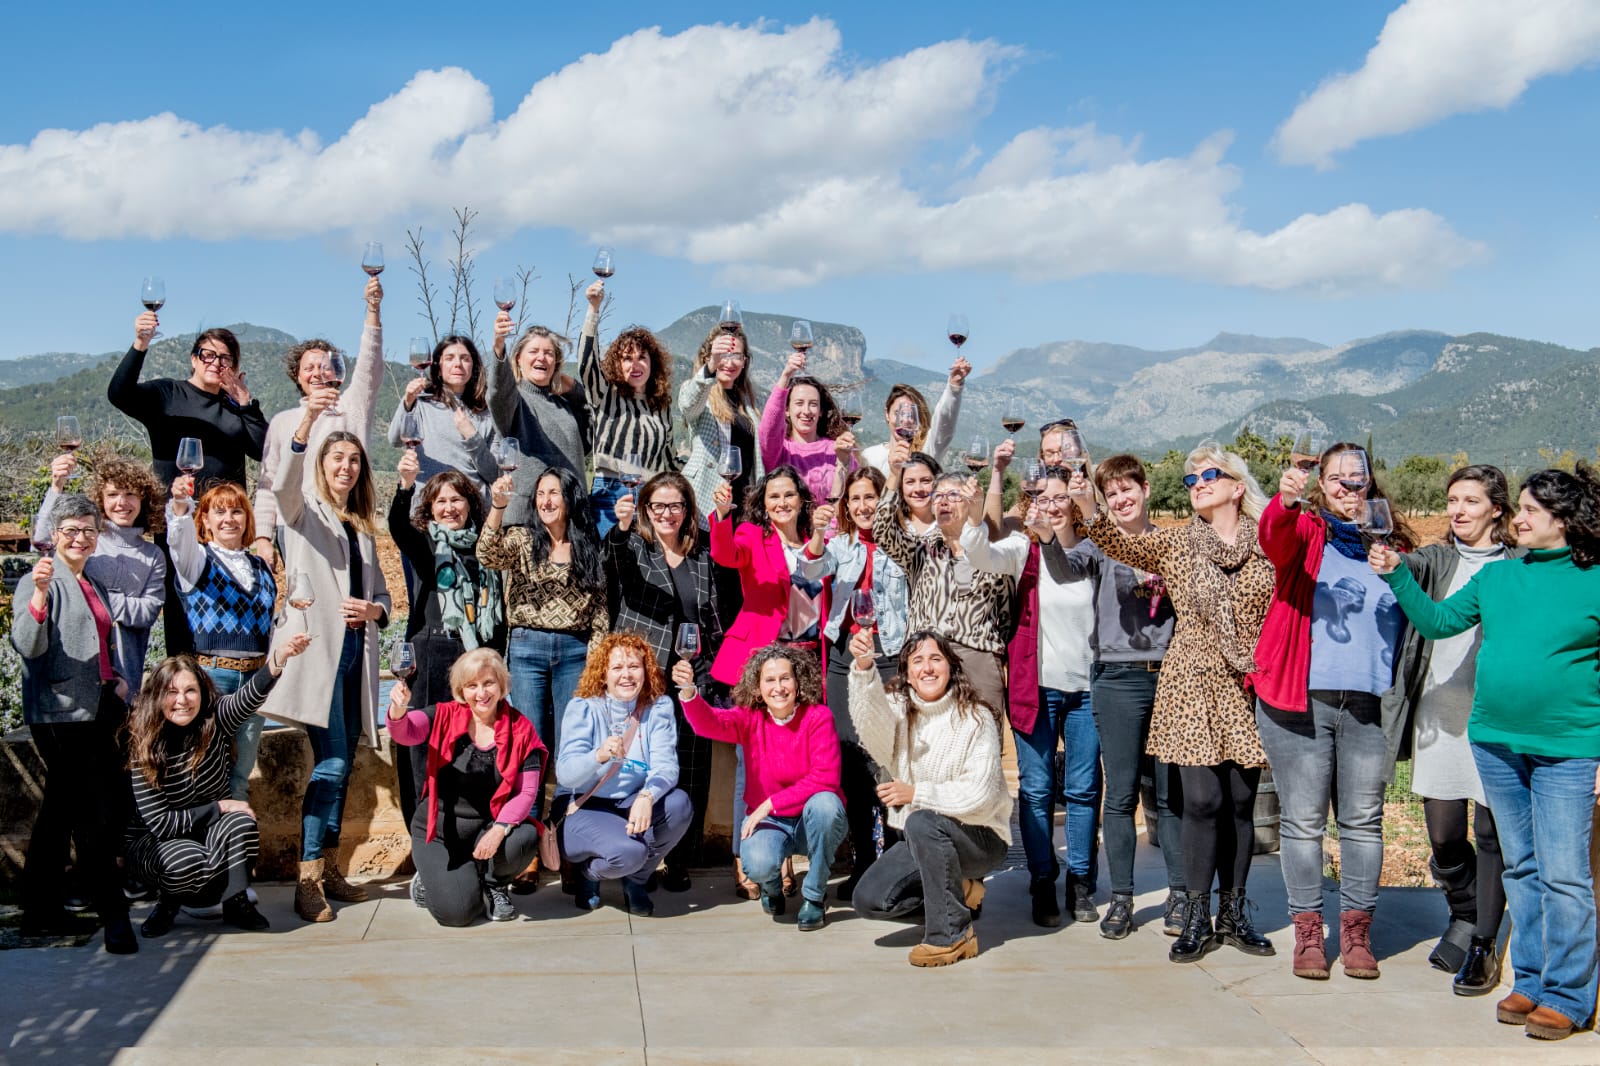 Les professionals lligades al món del vi celebren plegades el Dia de la Dona